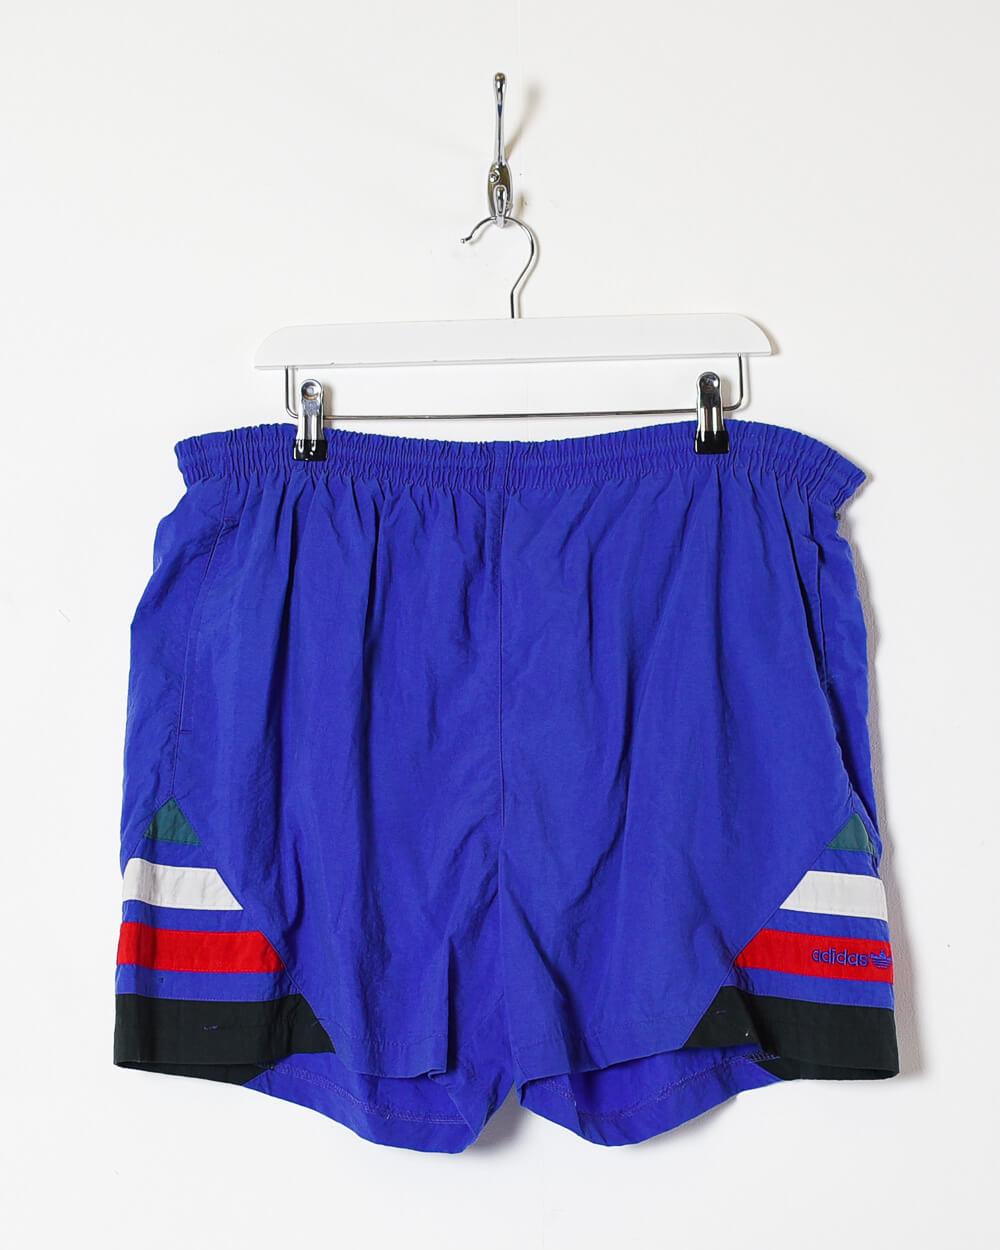 Blue Adidas Shorts - Large